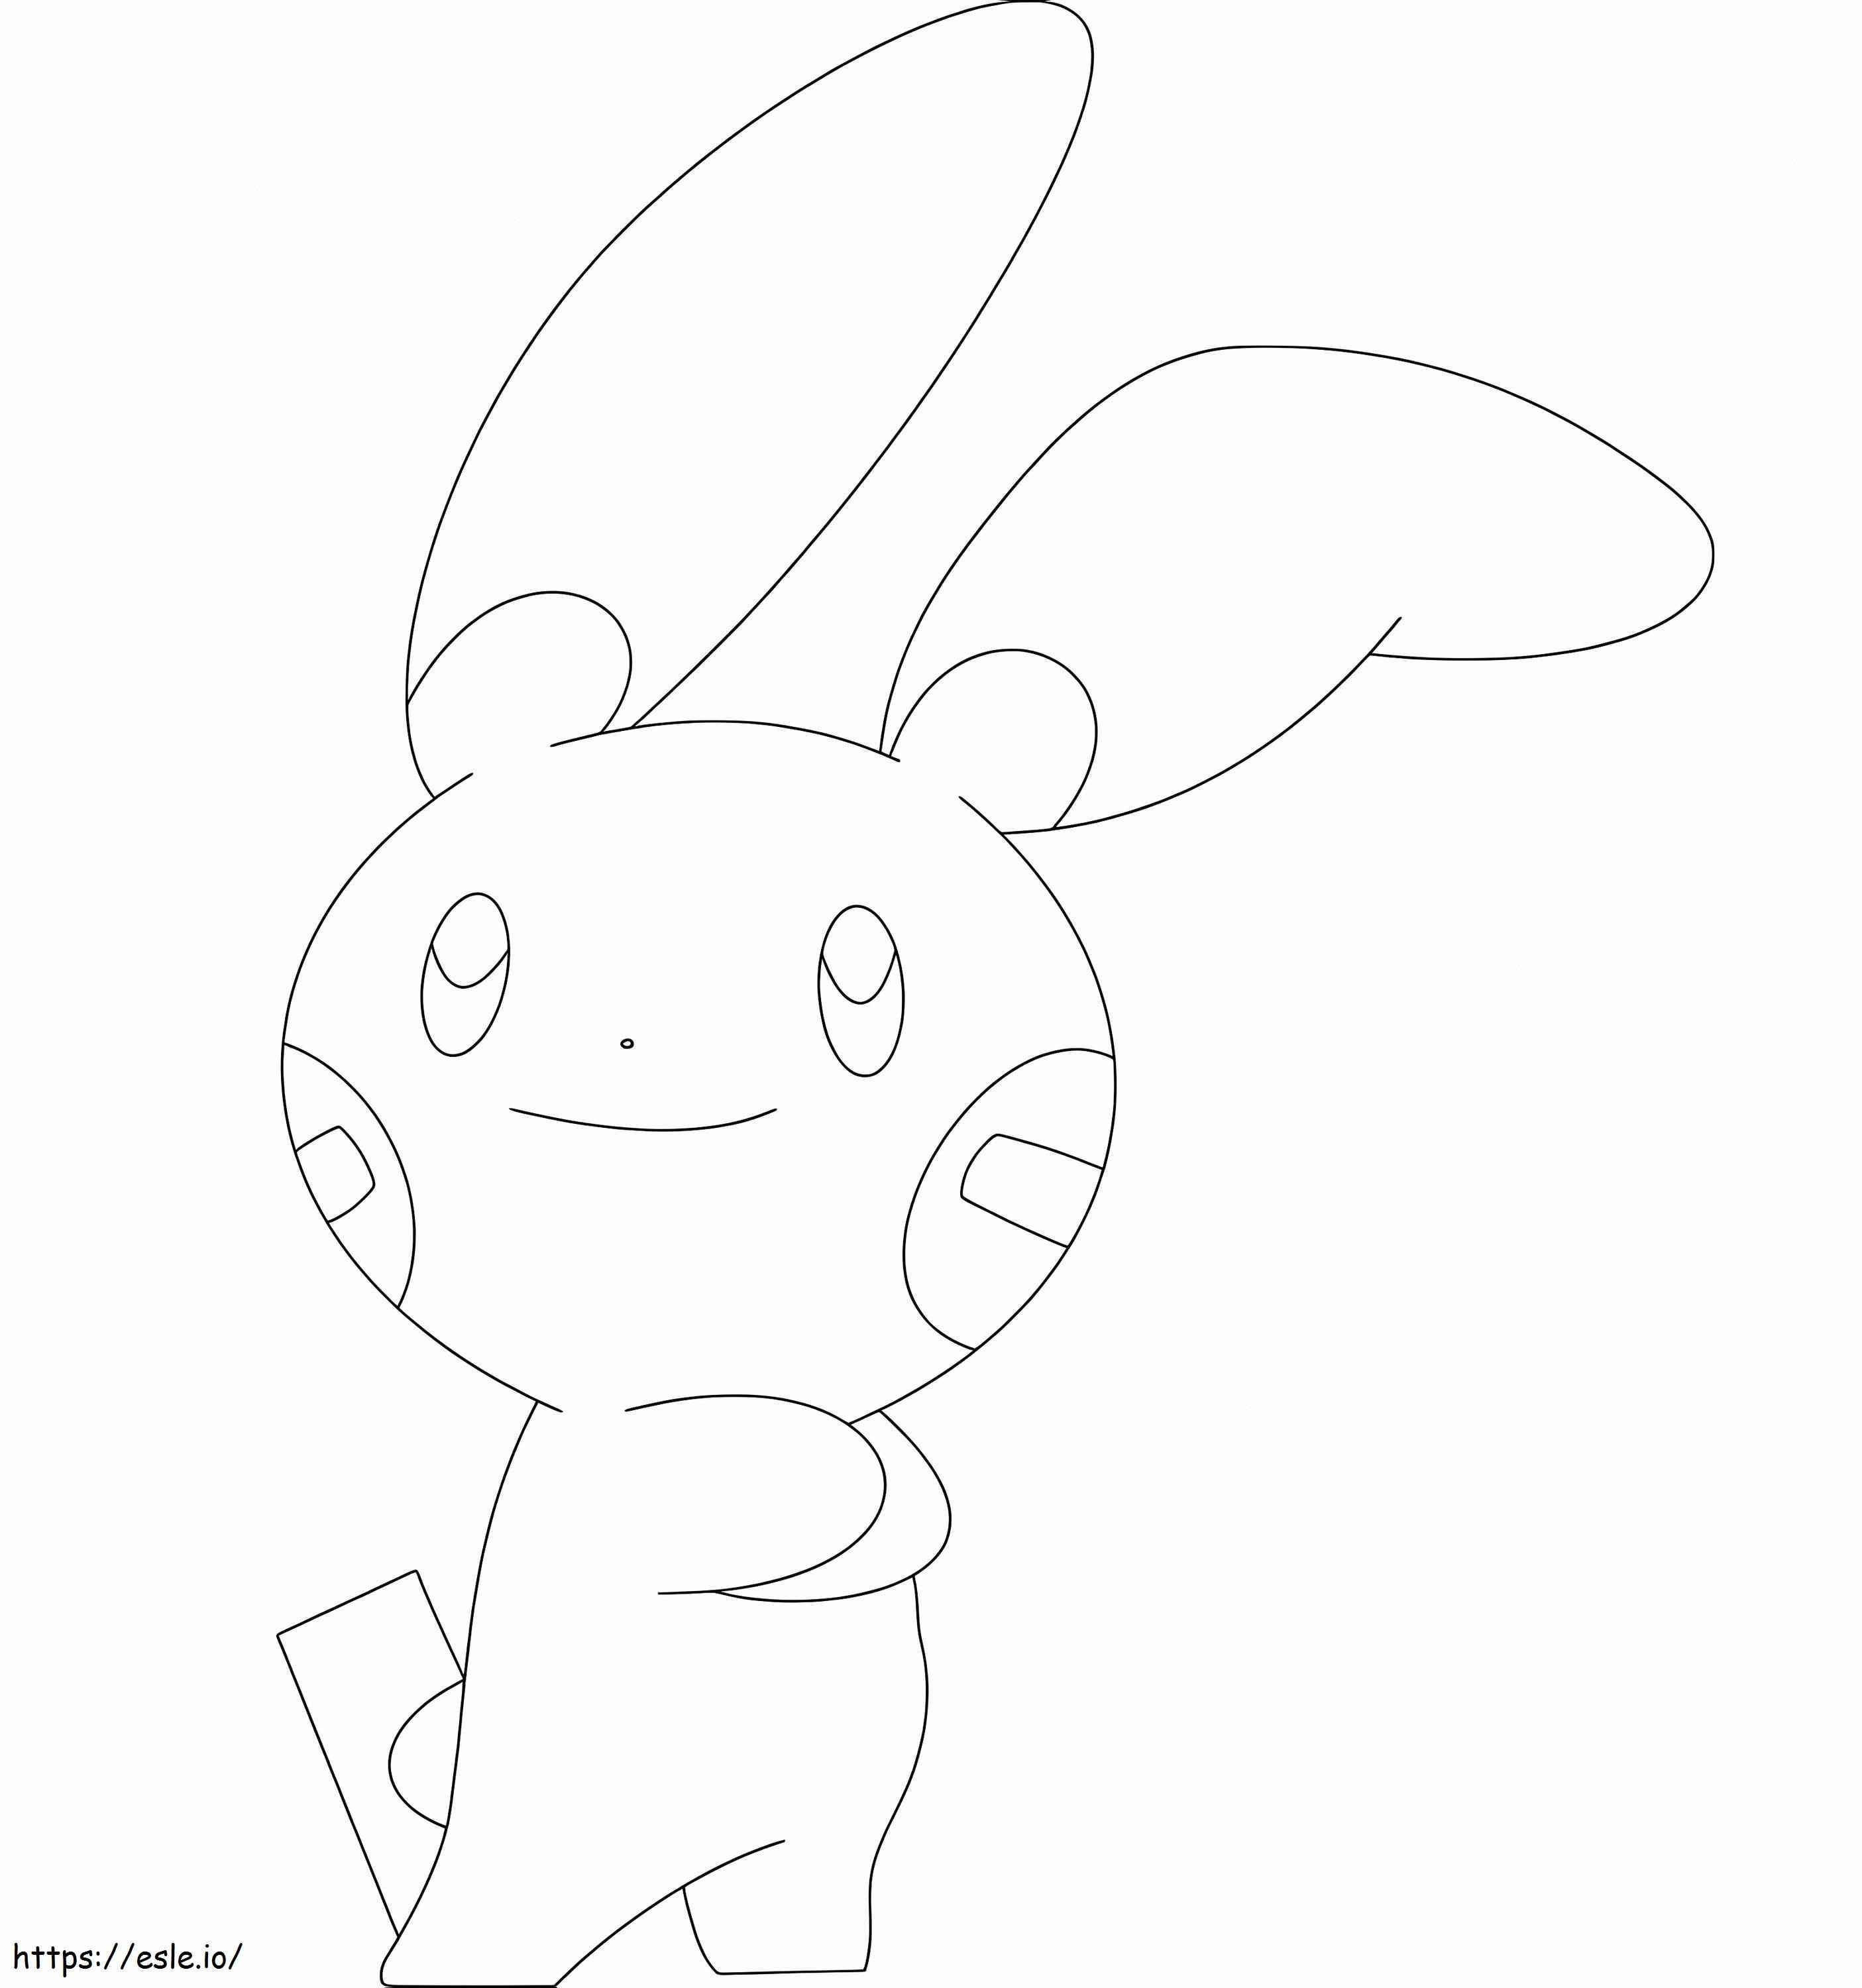 Coloriage Mon Pokémon 4 à imprimer dessin